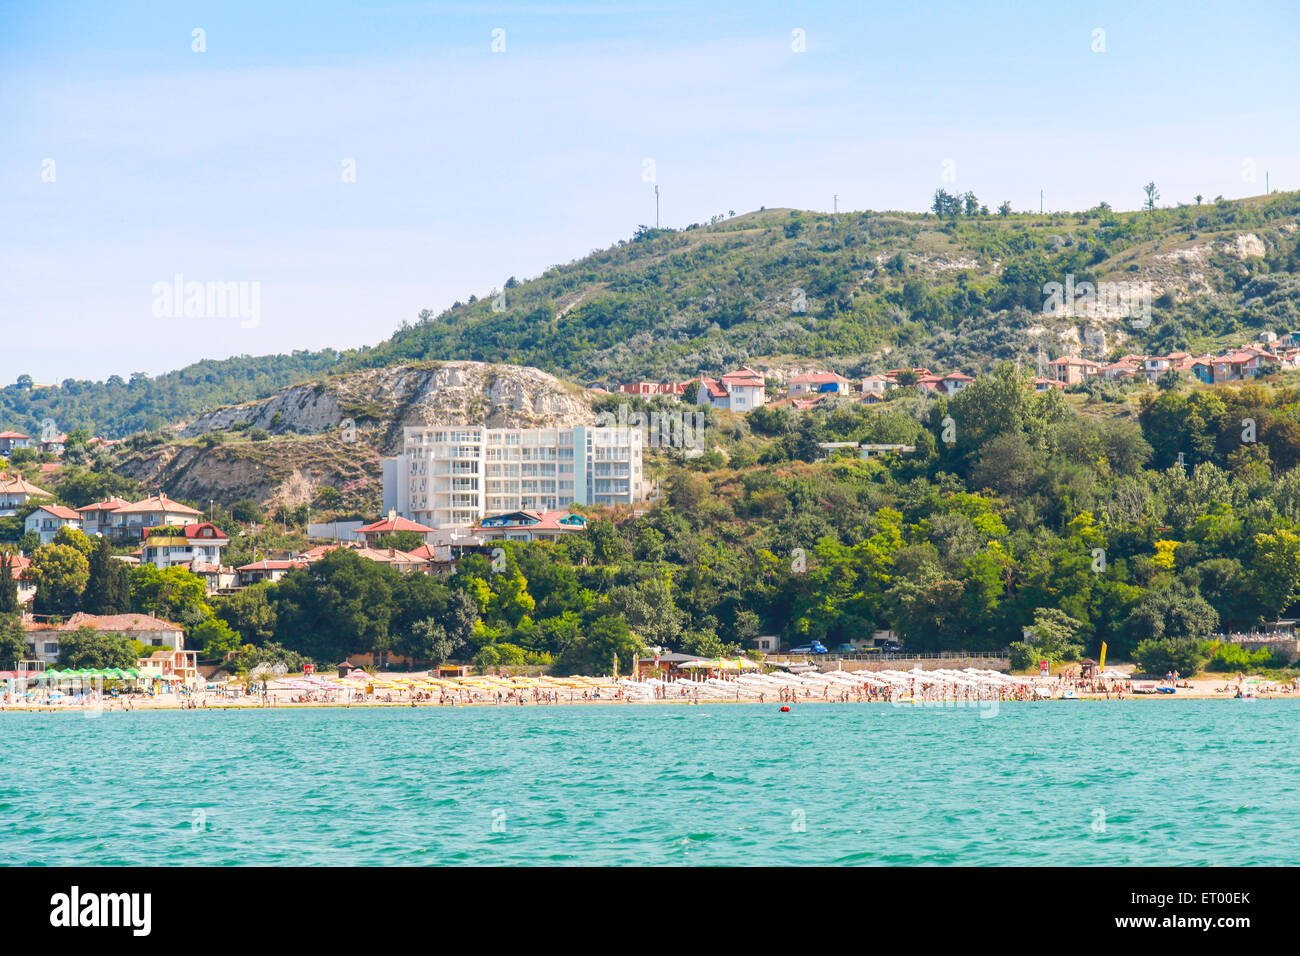 Paysage panoramique d'été de Balchik resort town, sur la côte de la mer Noire, région de Varna, Bulgarie Banque D'Images